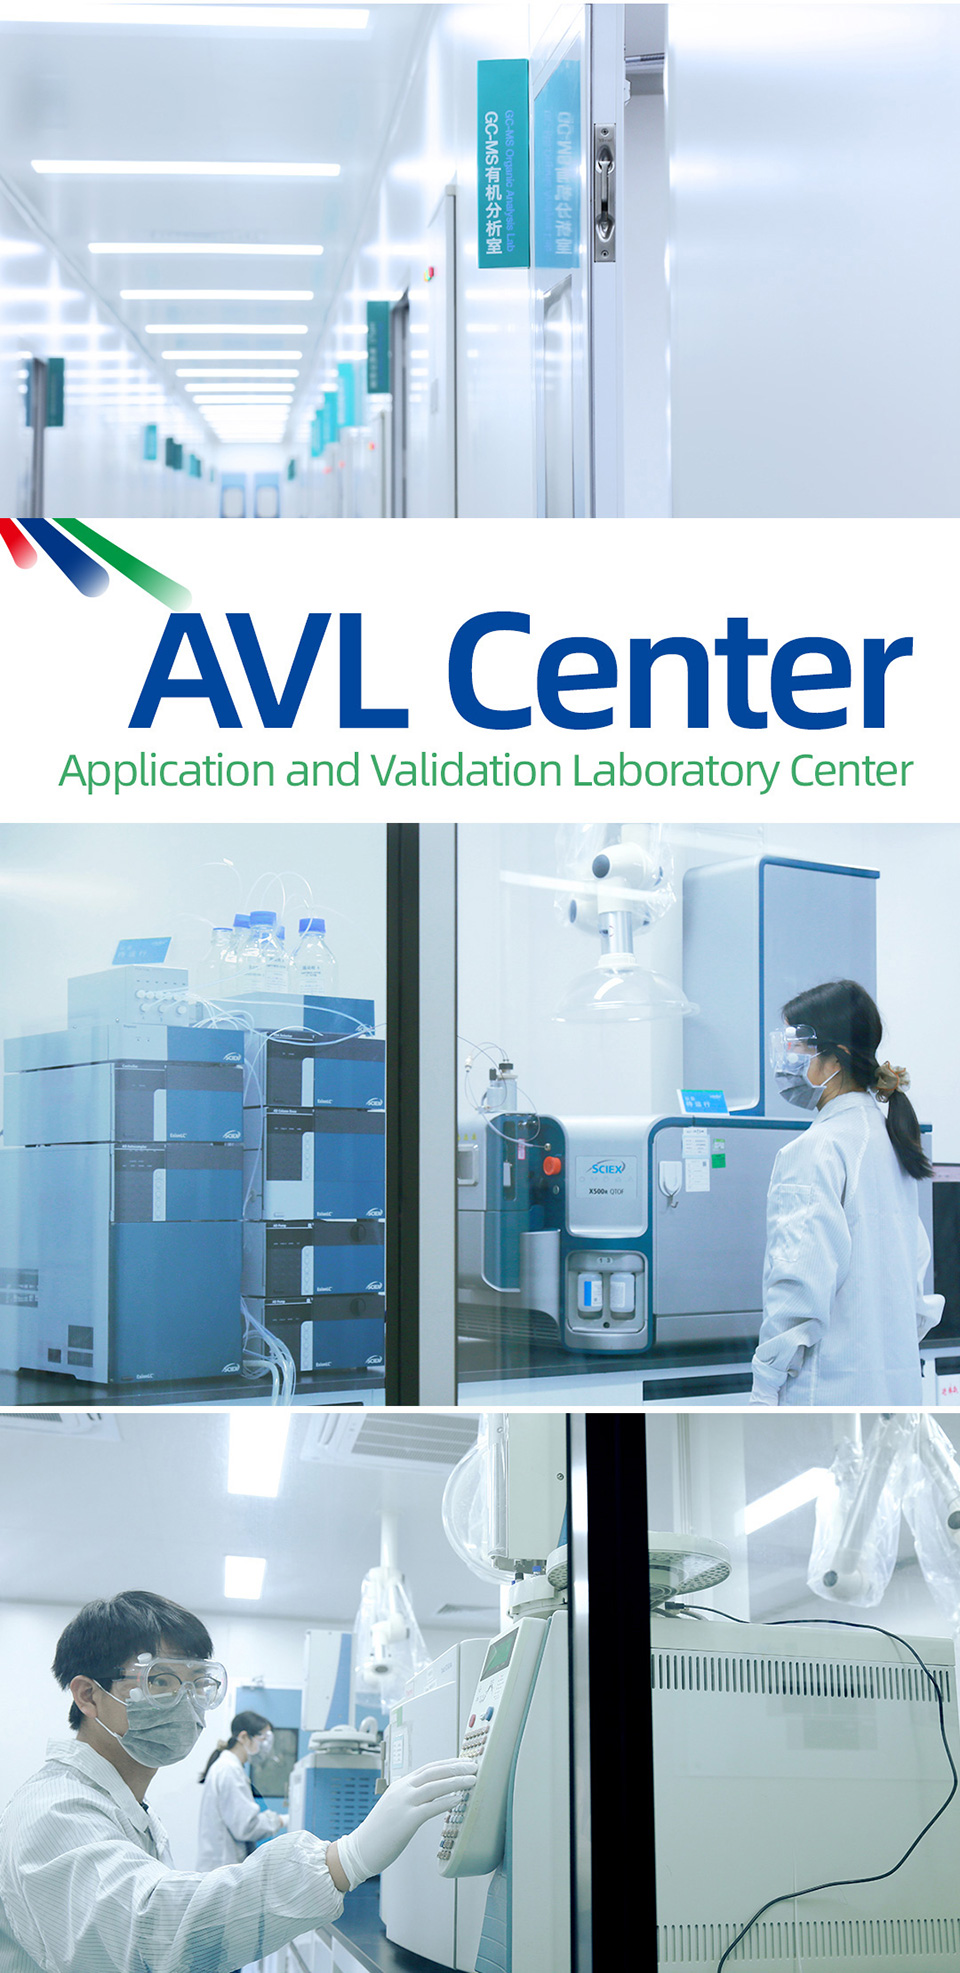 AVL-center-coobetter-202104-01.jpg